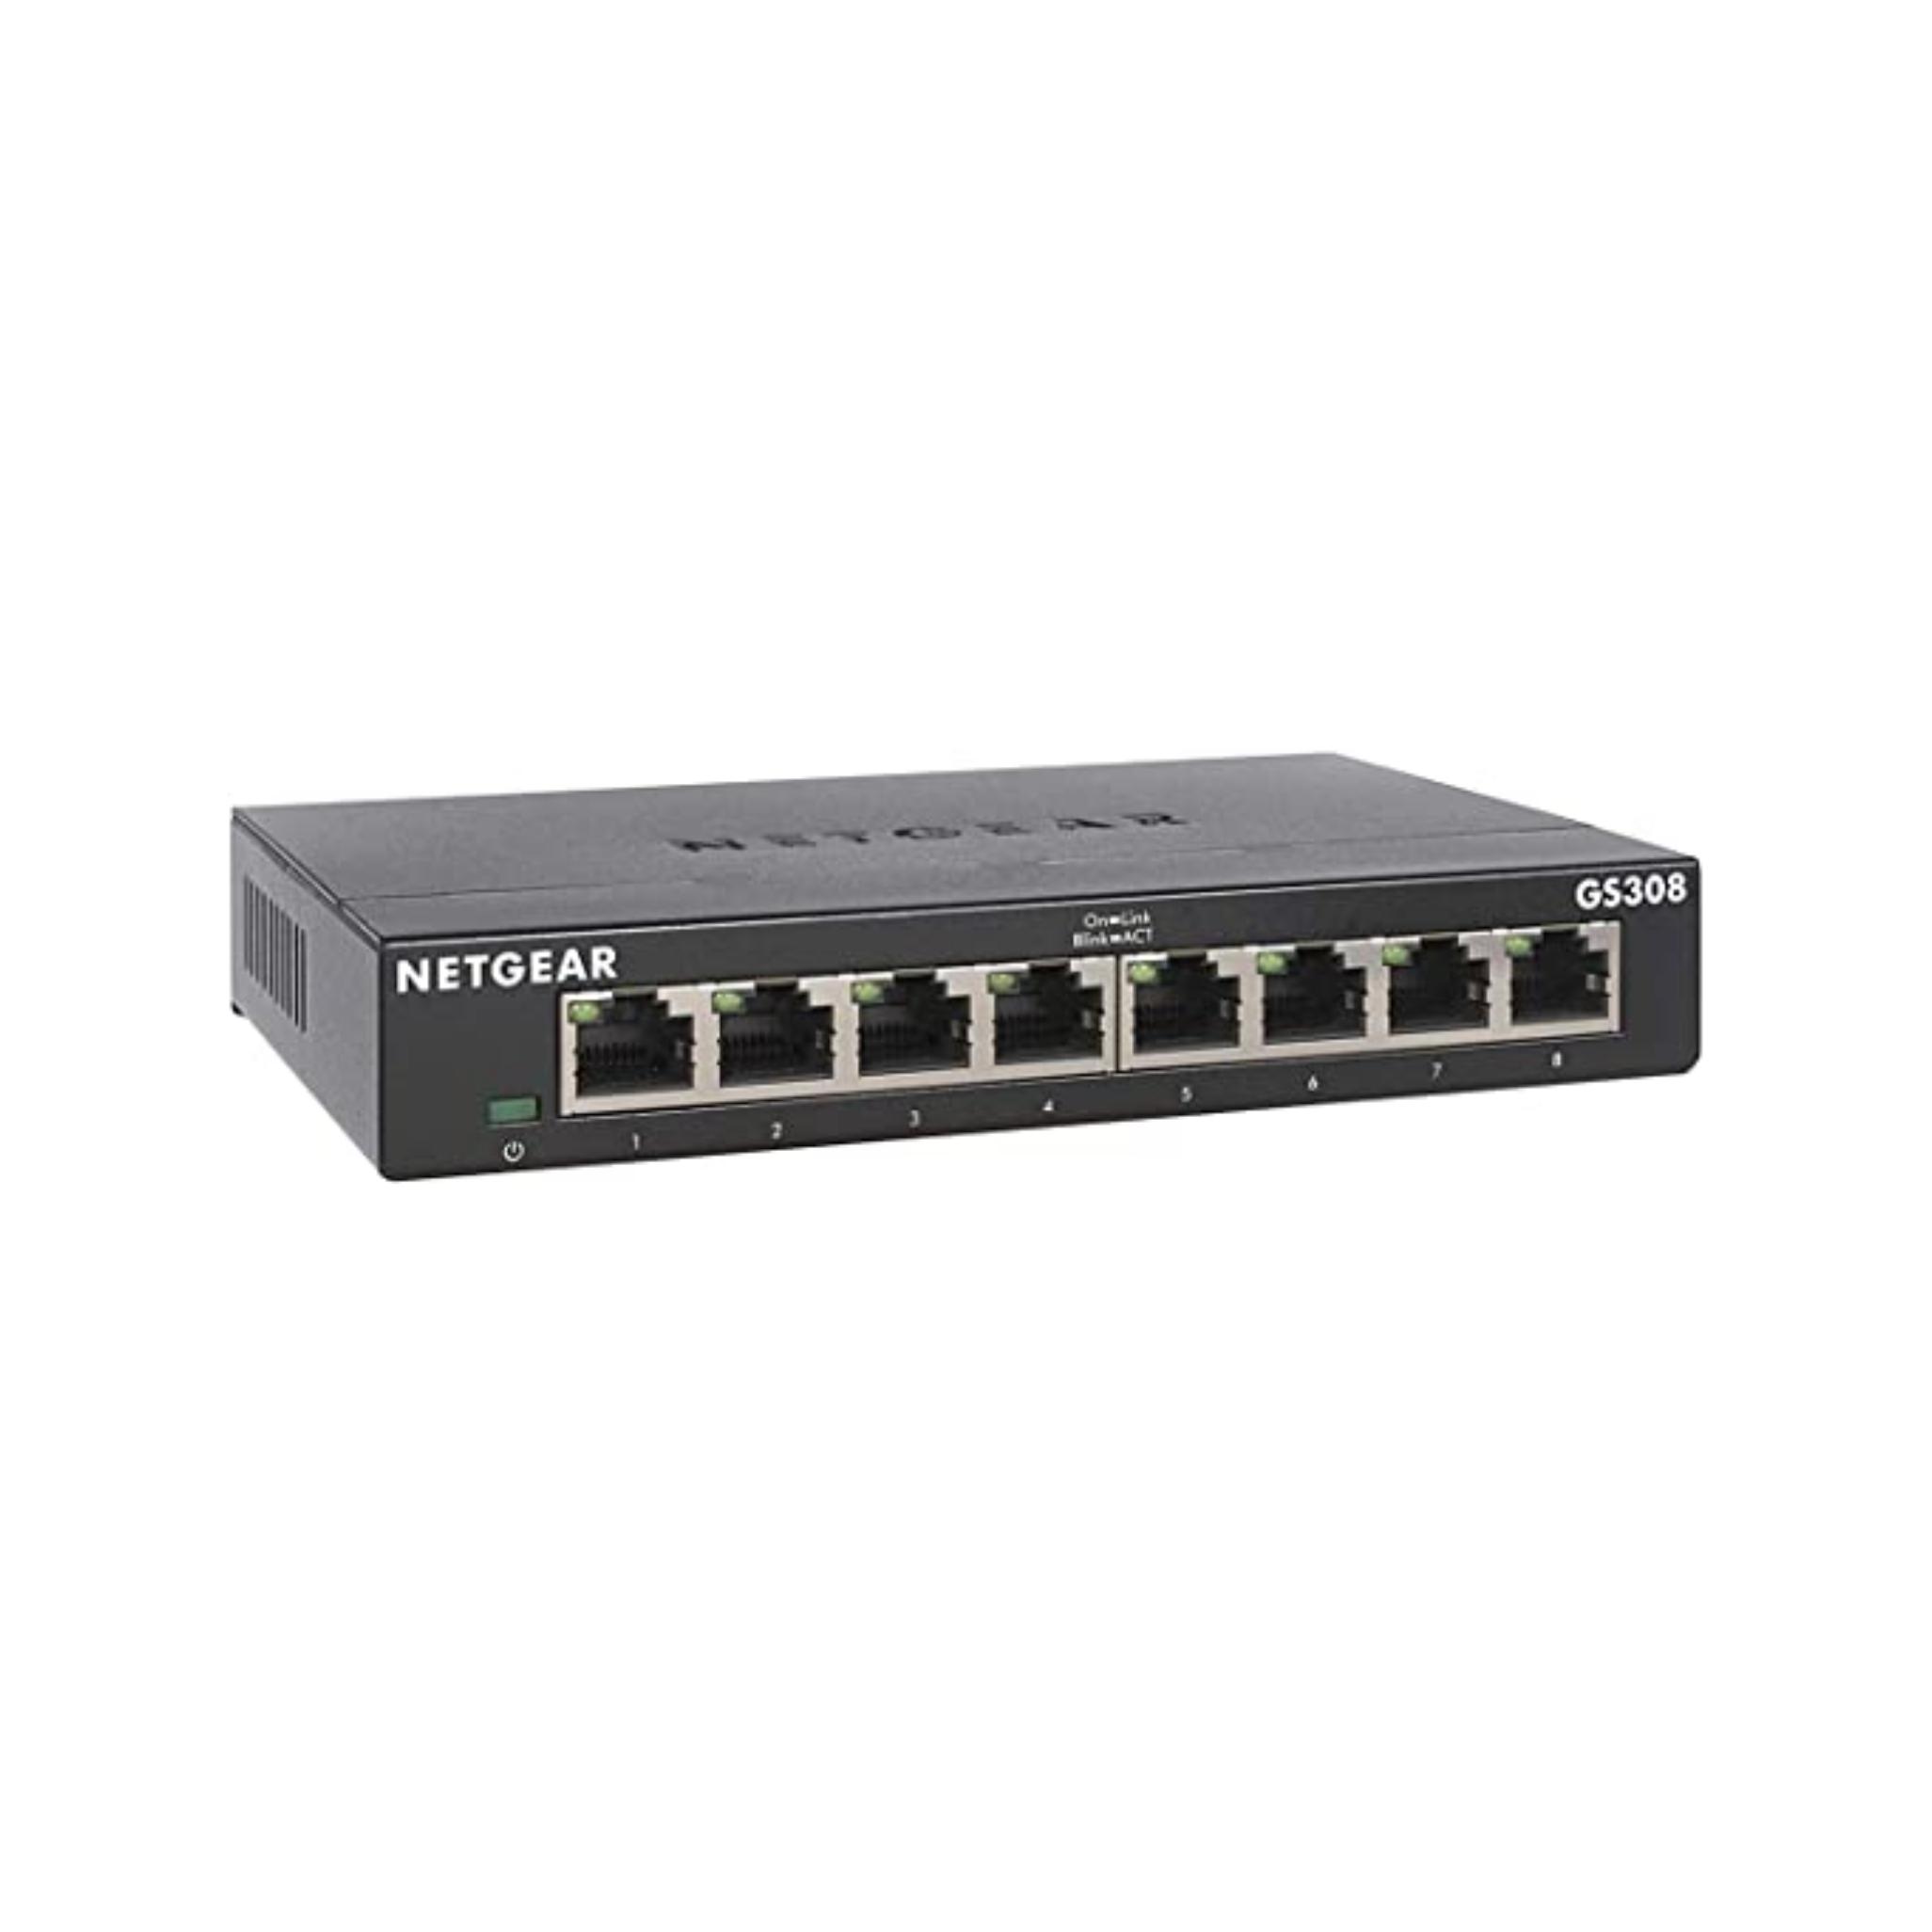 NETGEAR 8-Port Gigabit Ethernet